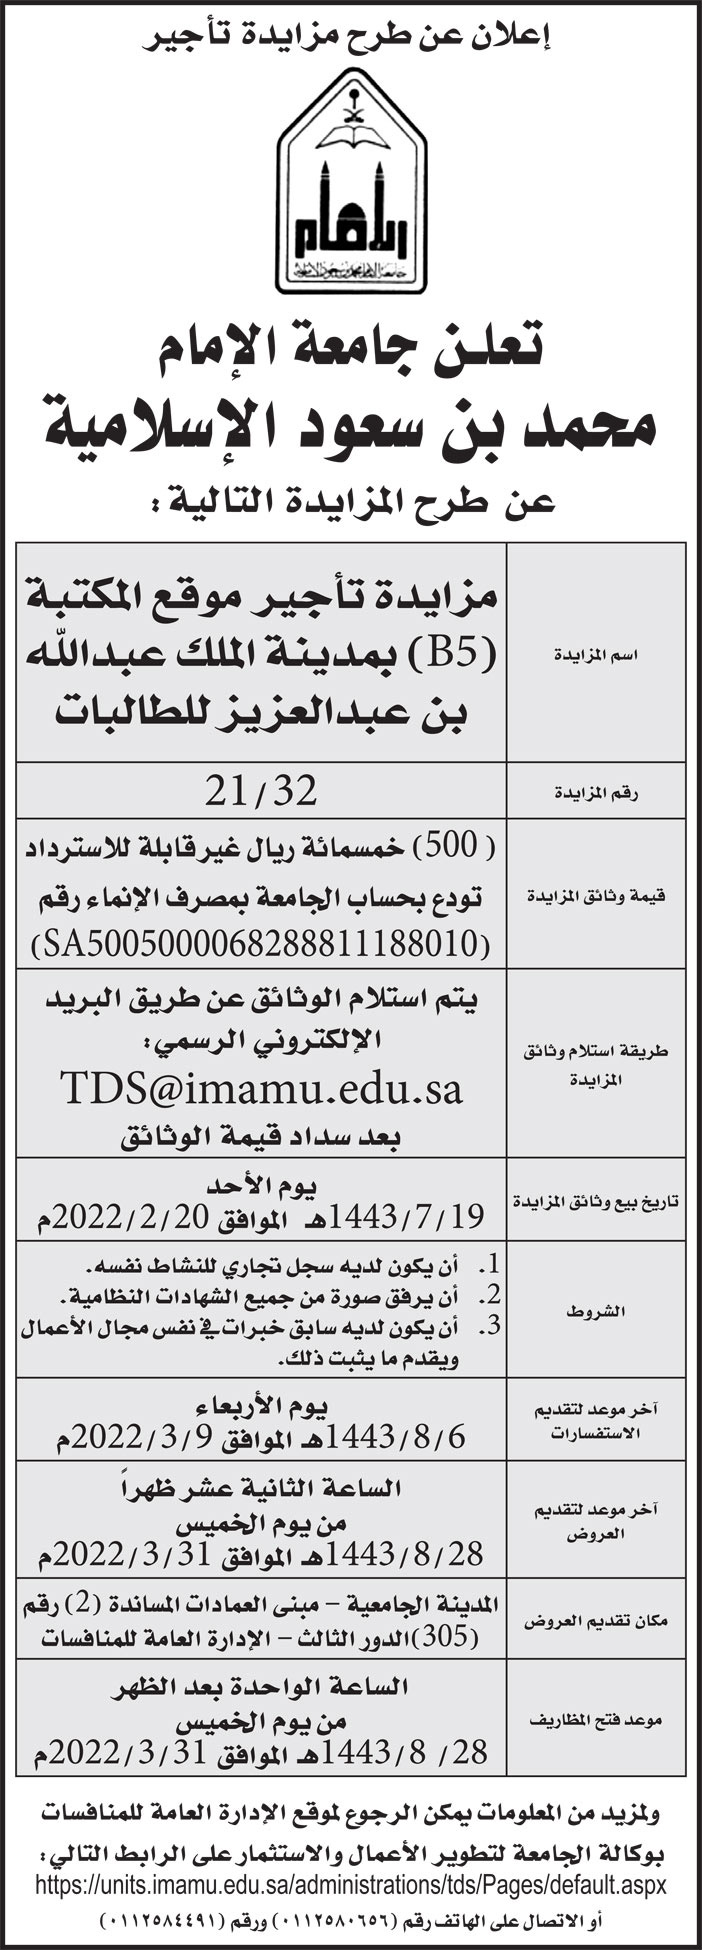 جامعة الإمام محمد بن سعود الإسلامية تمدد طرح مزايدة تأجير موقع المكتبة (B5) بمدينة الملك عبدالله بن عبدالعزيز للطالبات 